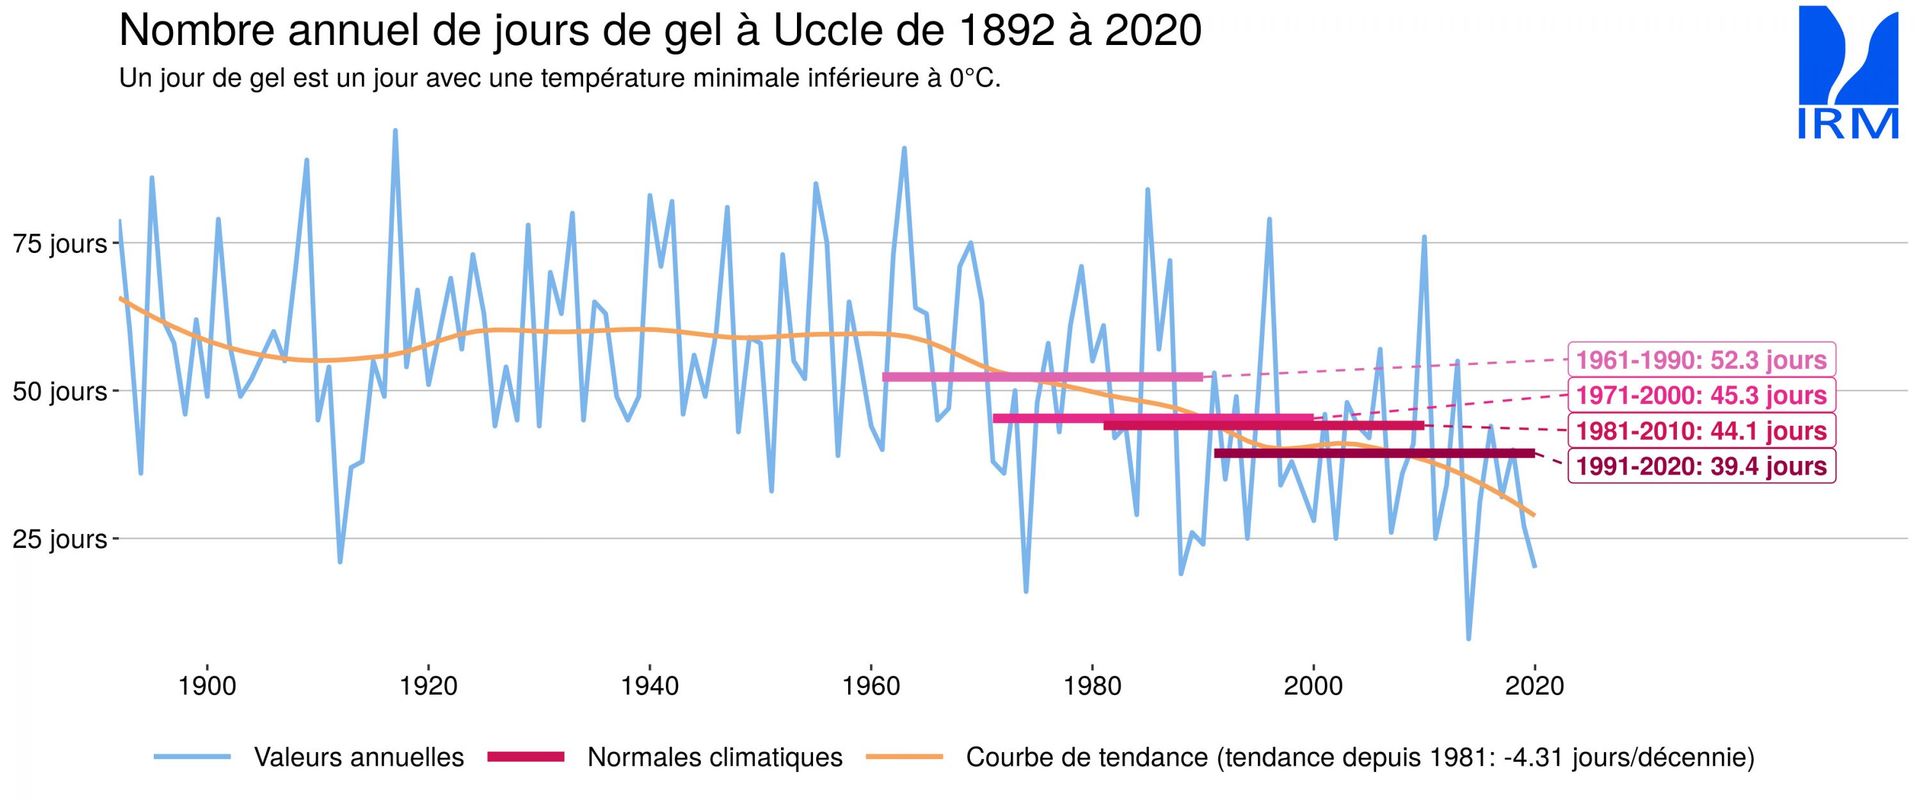 Nombre annuel de jours de gel à Uccle de 1892 à 2020